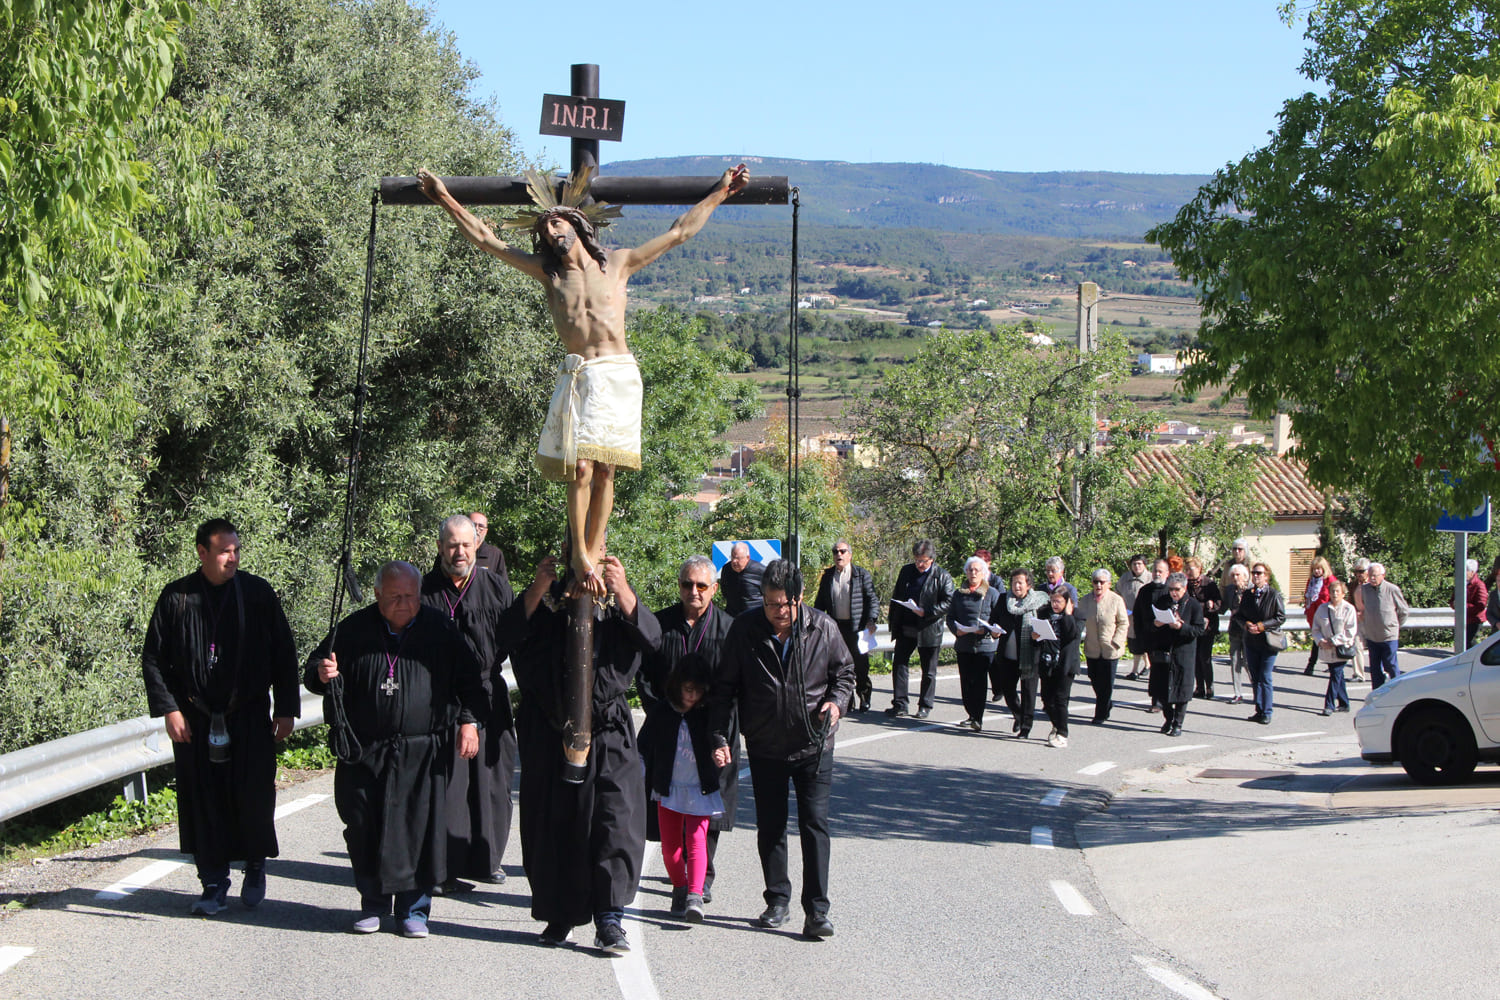 Festa Santa Creu Sant Martí Sarroca